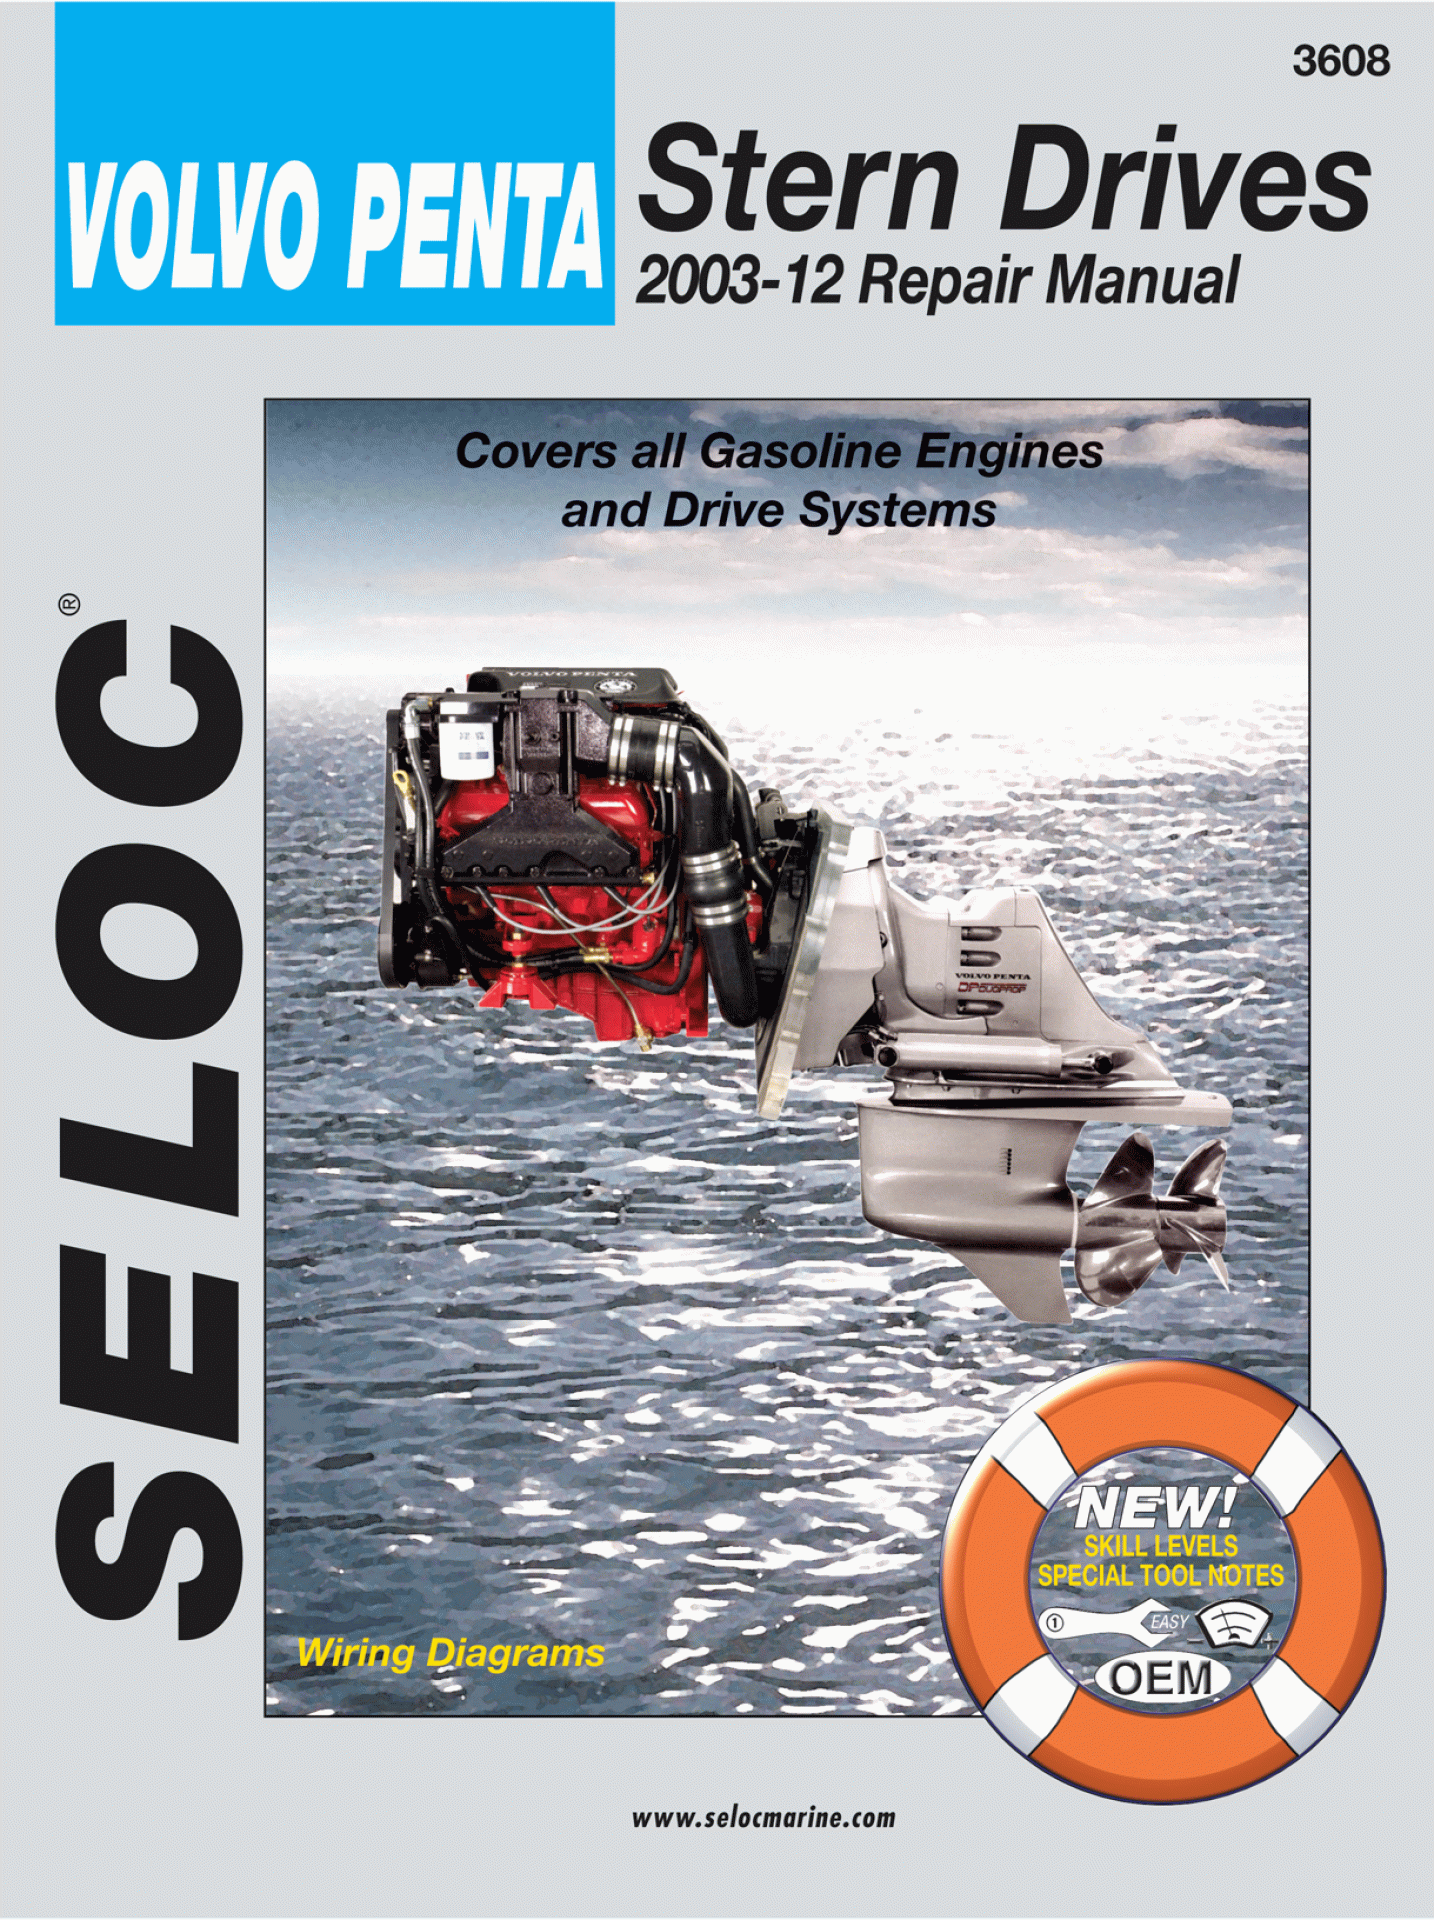 SELOC PUBLISHING | 18-03608 | REPAIR MANUAL Volvo Penta Stern Drive 2003-12